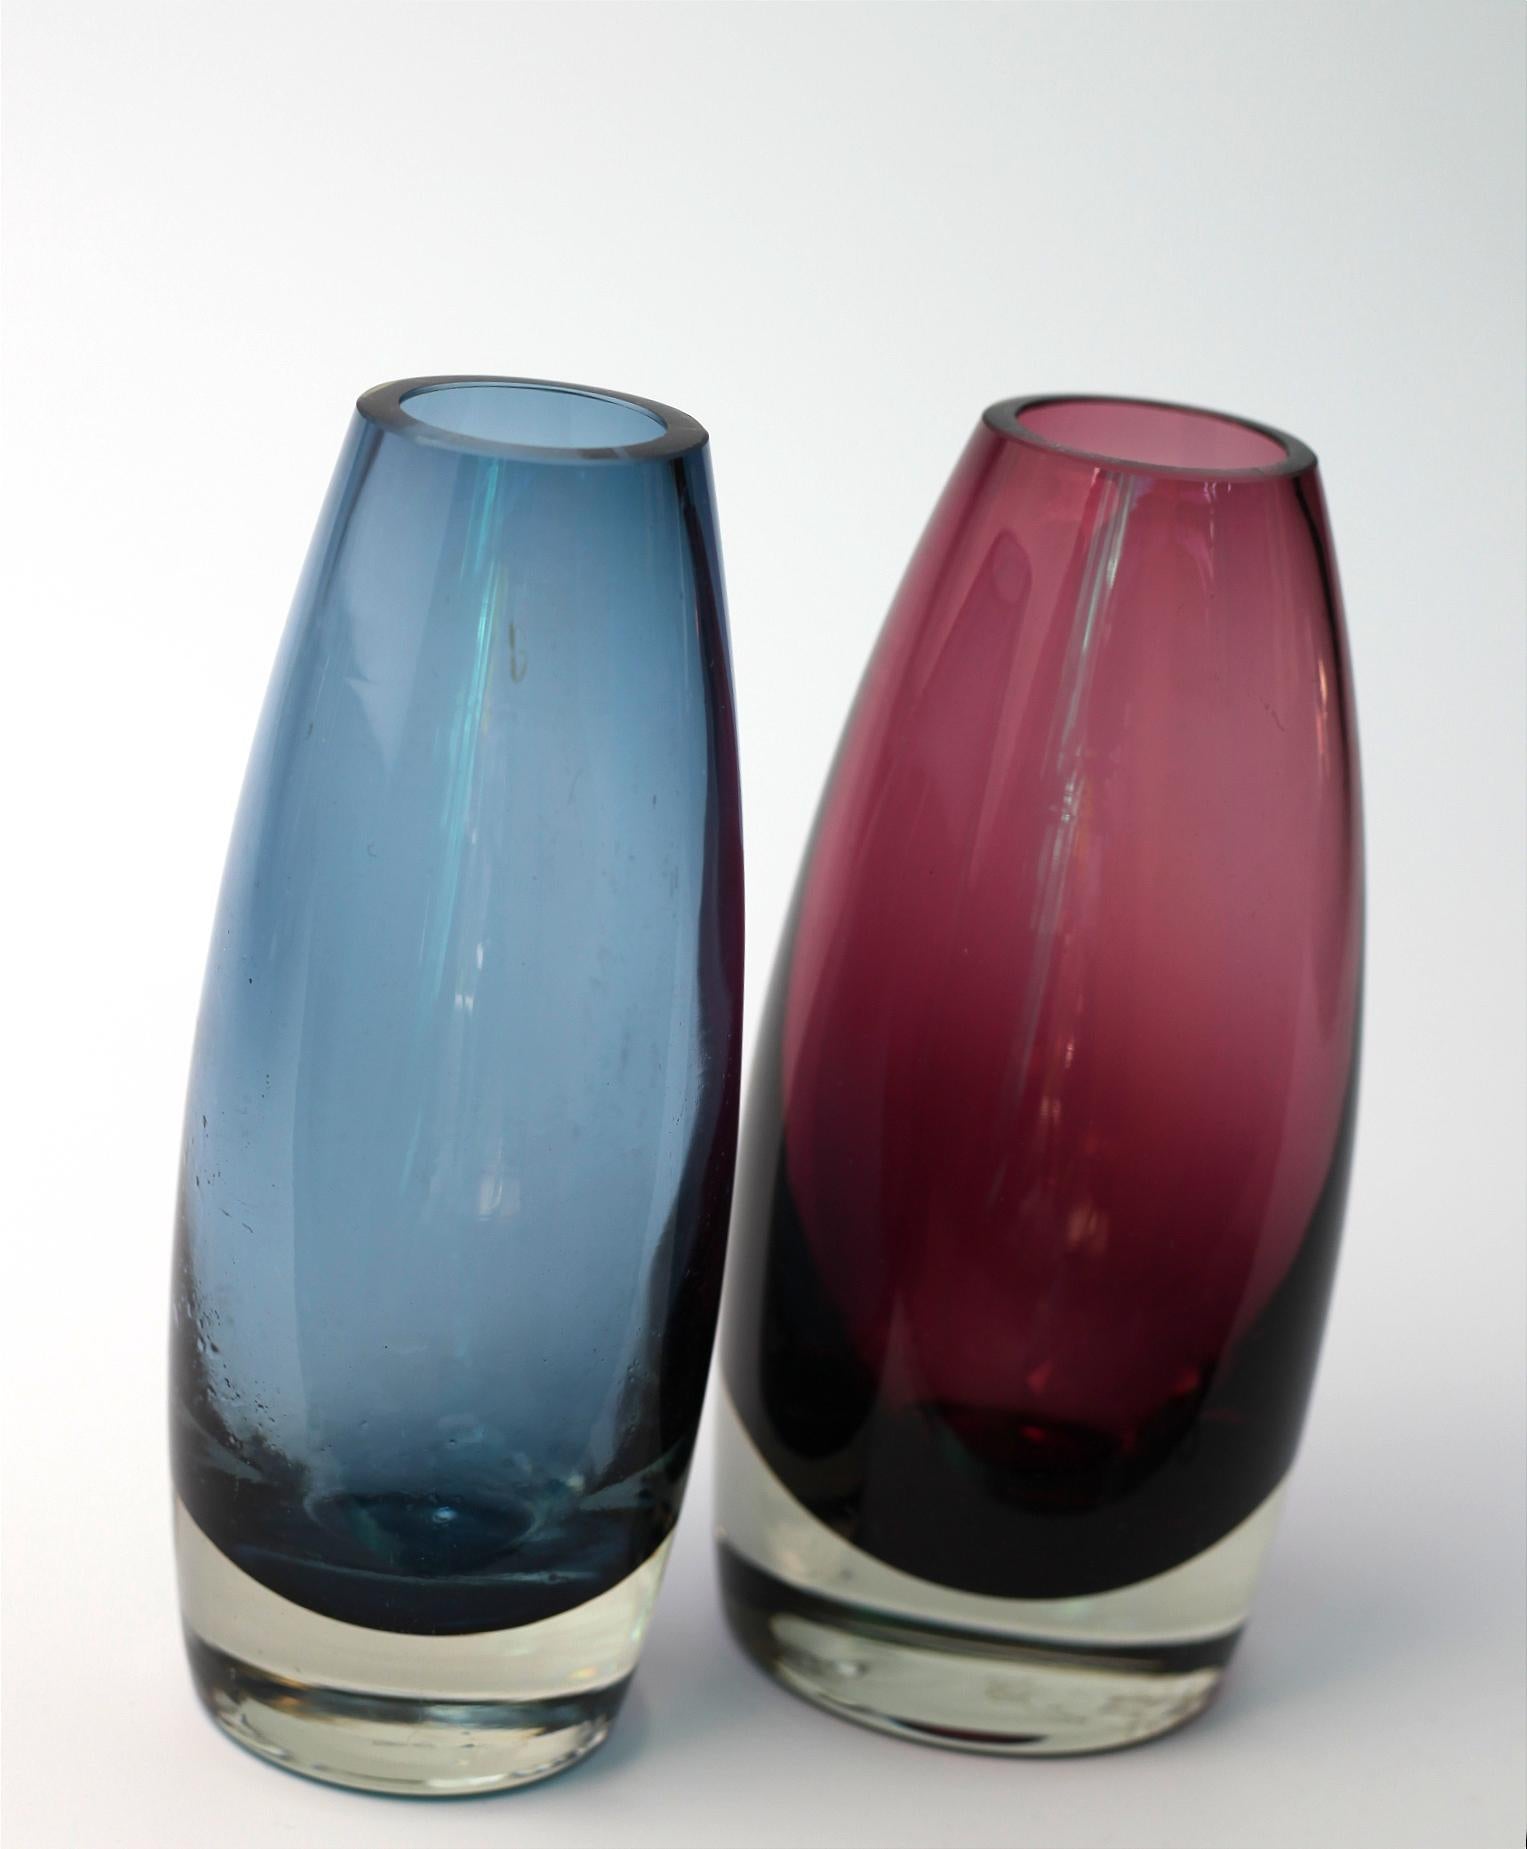 Dies ist ein schönes Paar von zwei handgefertigten Glasvasen aus Finnland. 

Höhe 16 CM. 
Breite 7 CM

Sie sind beide unterzeichnet. 
Wenn Sie eine Collection'S mit mehr als zwei Exemplaren kaufen möchten, kontaktieren Sie mich bitte. 